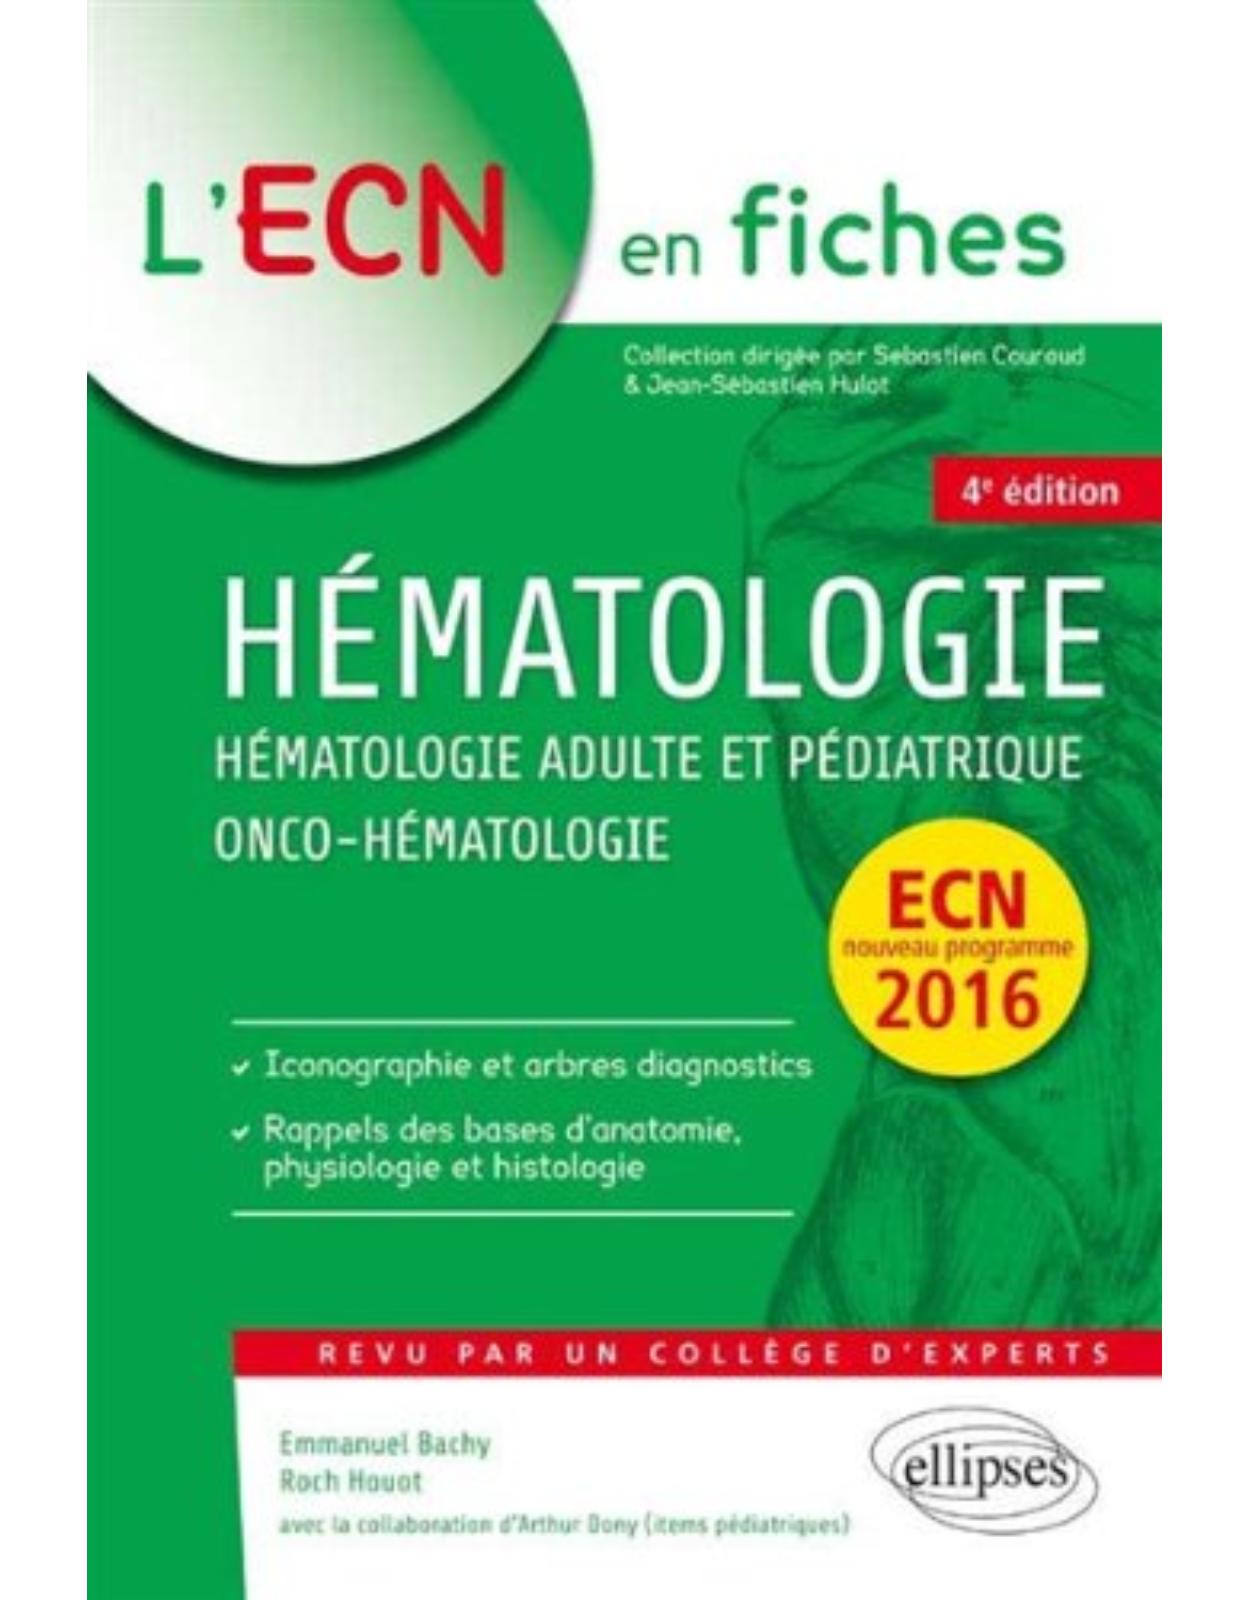 Hématologie Adulte et Pédiatrique Onco-Hématologie ECN 2016